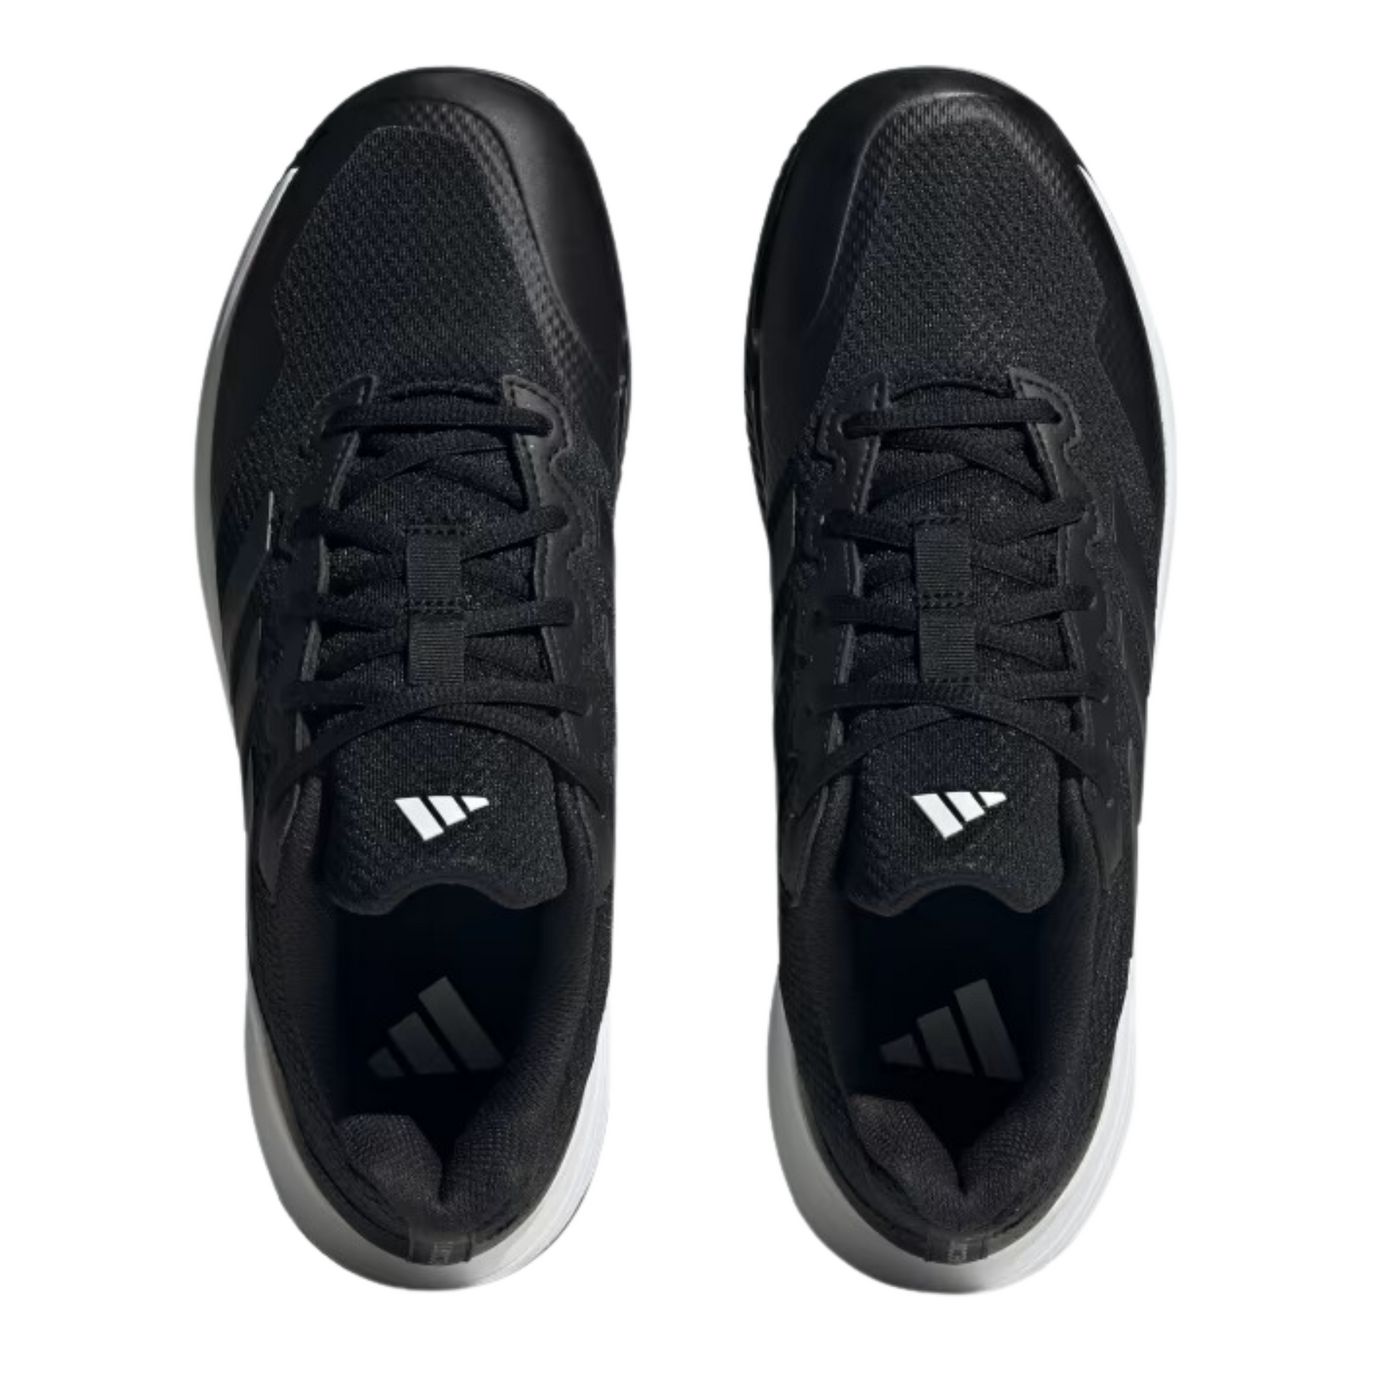 Adidas Game Court 2.0 Men Tennis Shoes - Core Black/Core Black/Grey Four